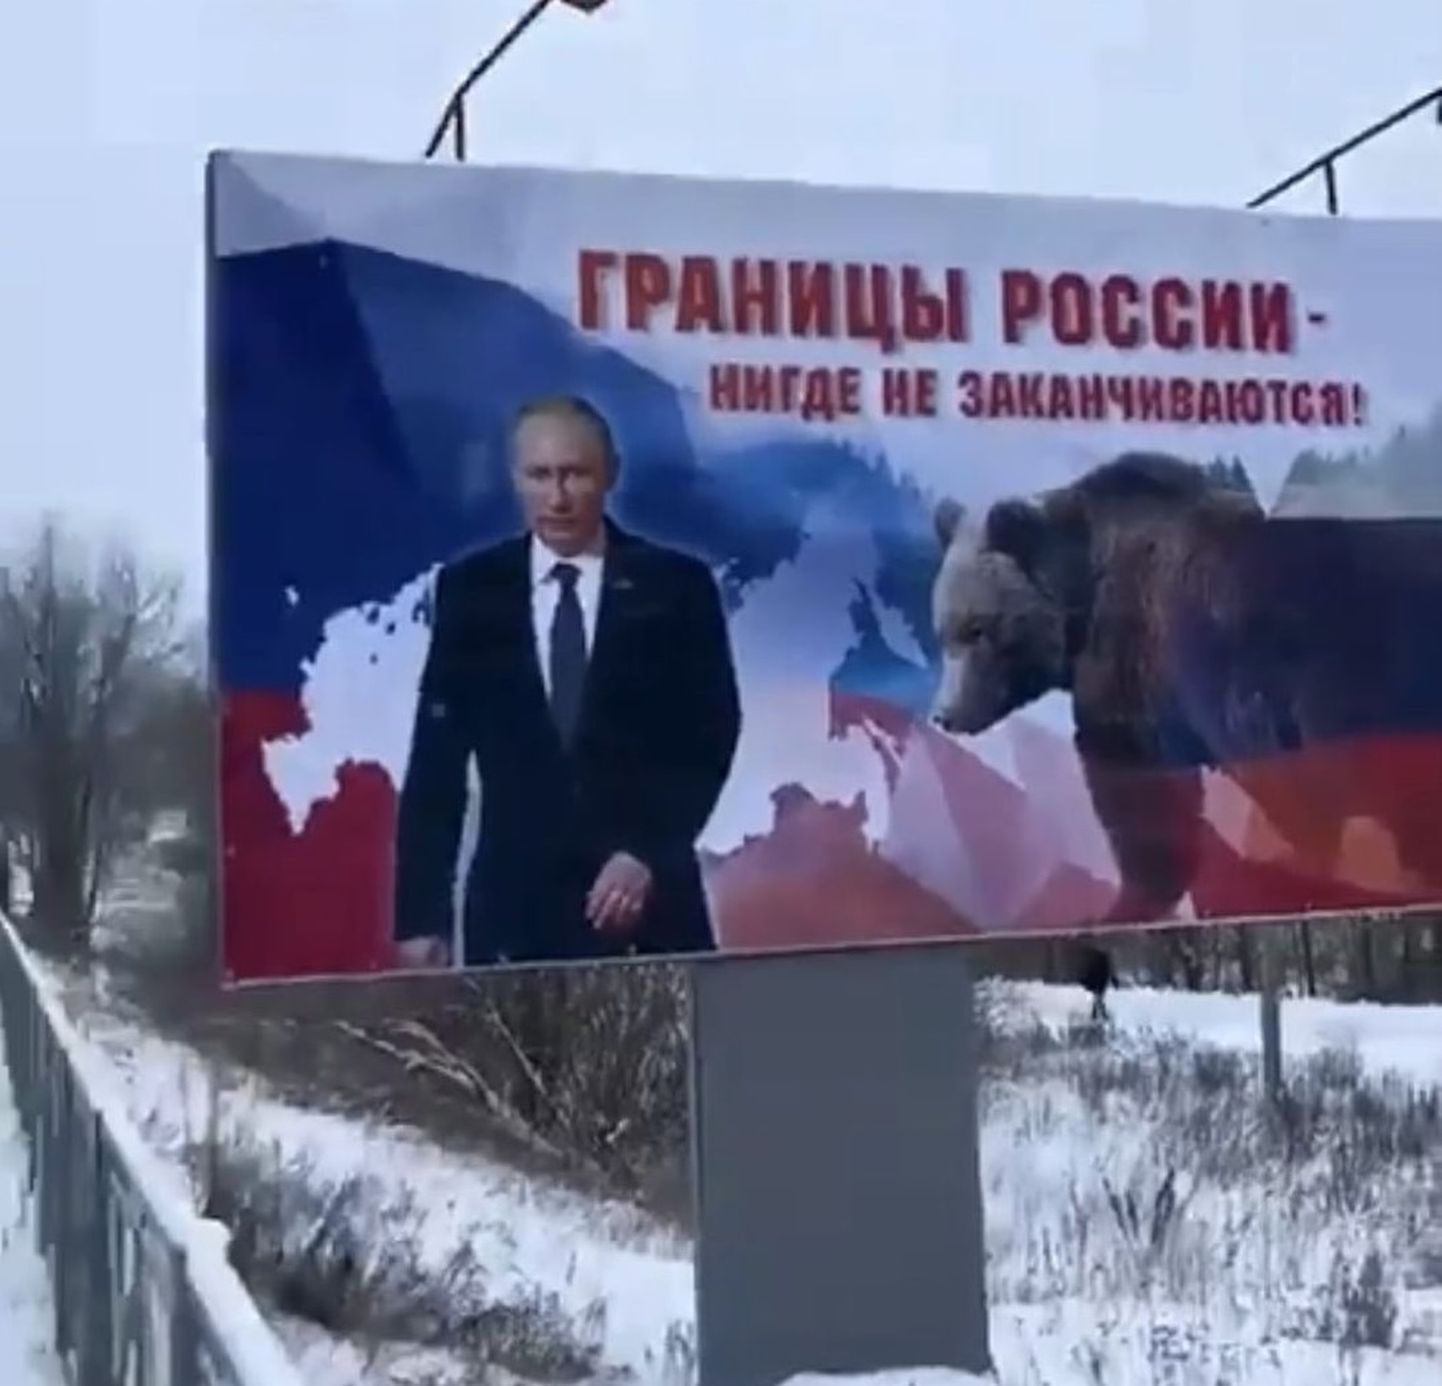 Скандальный плакат в Ивангороде.